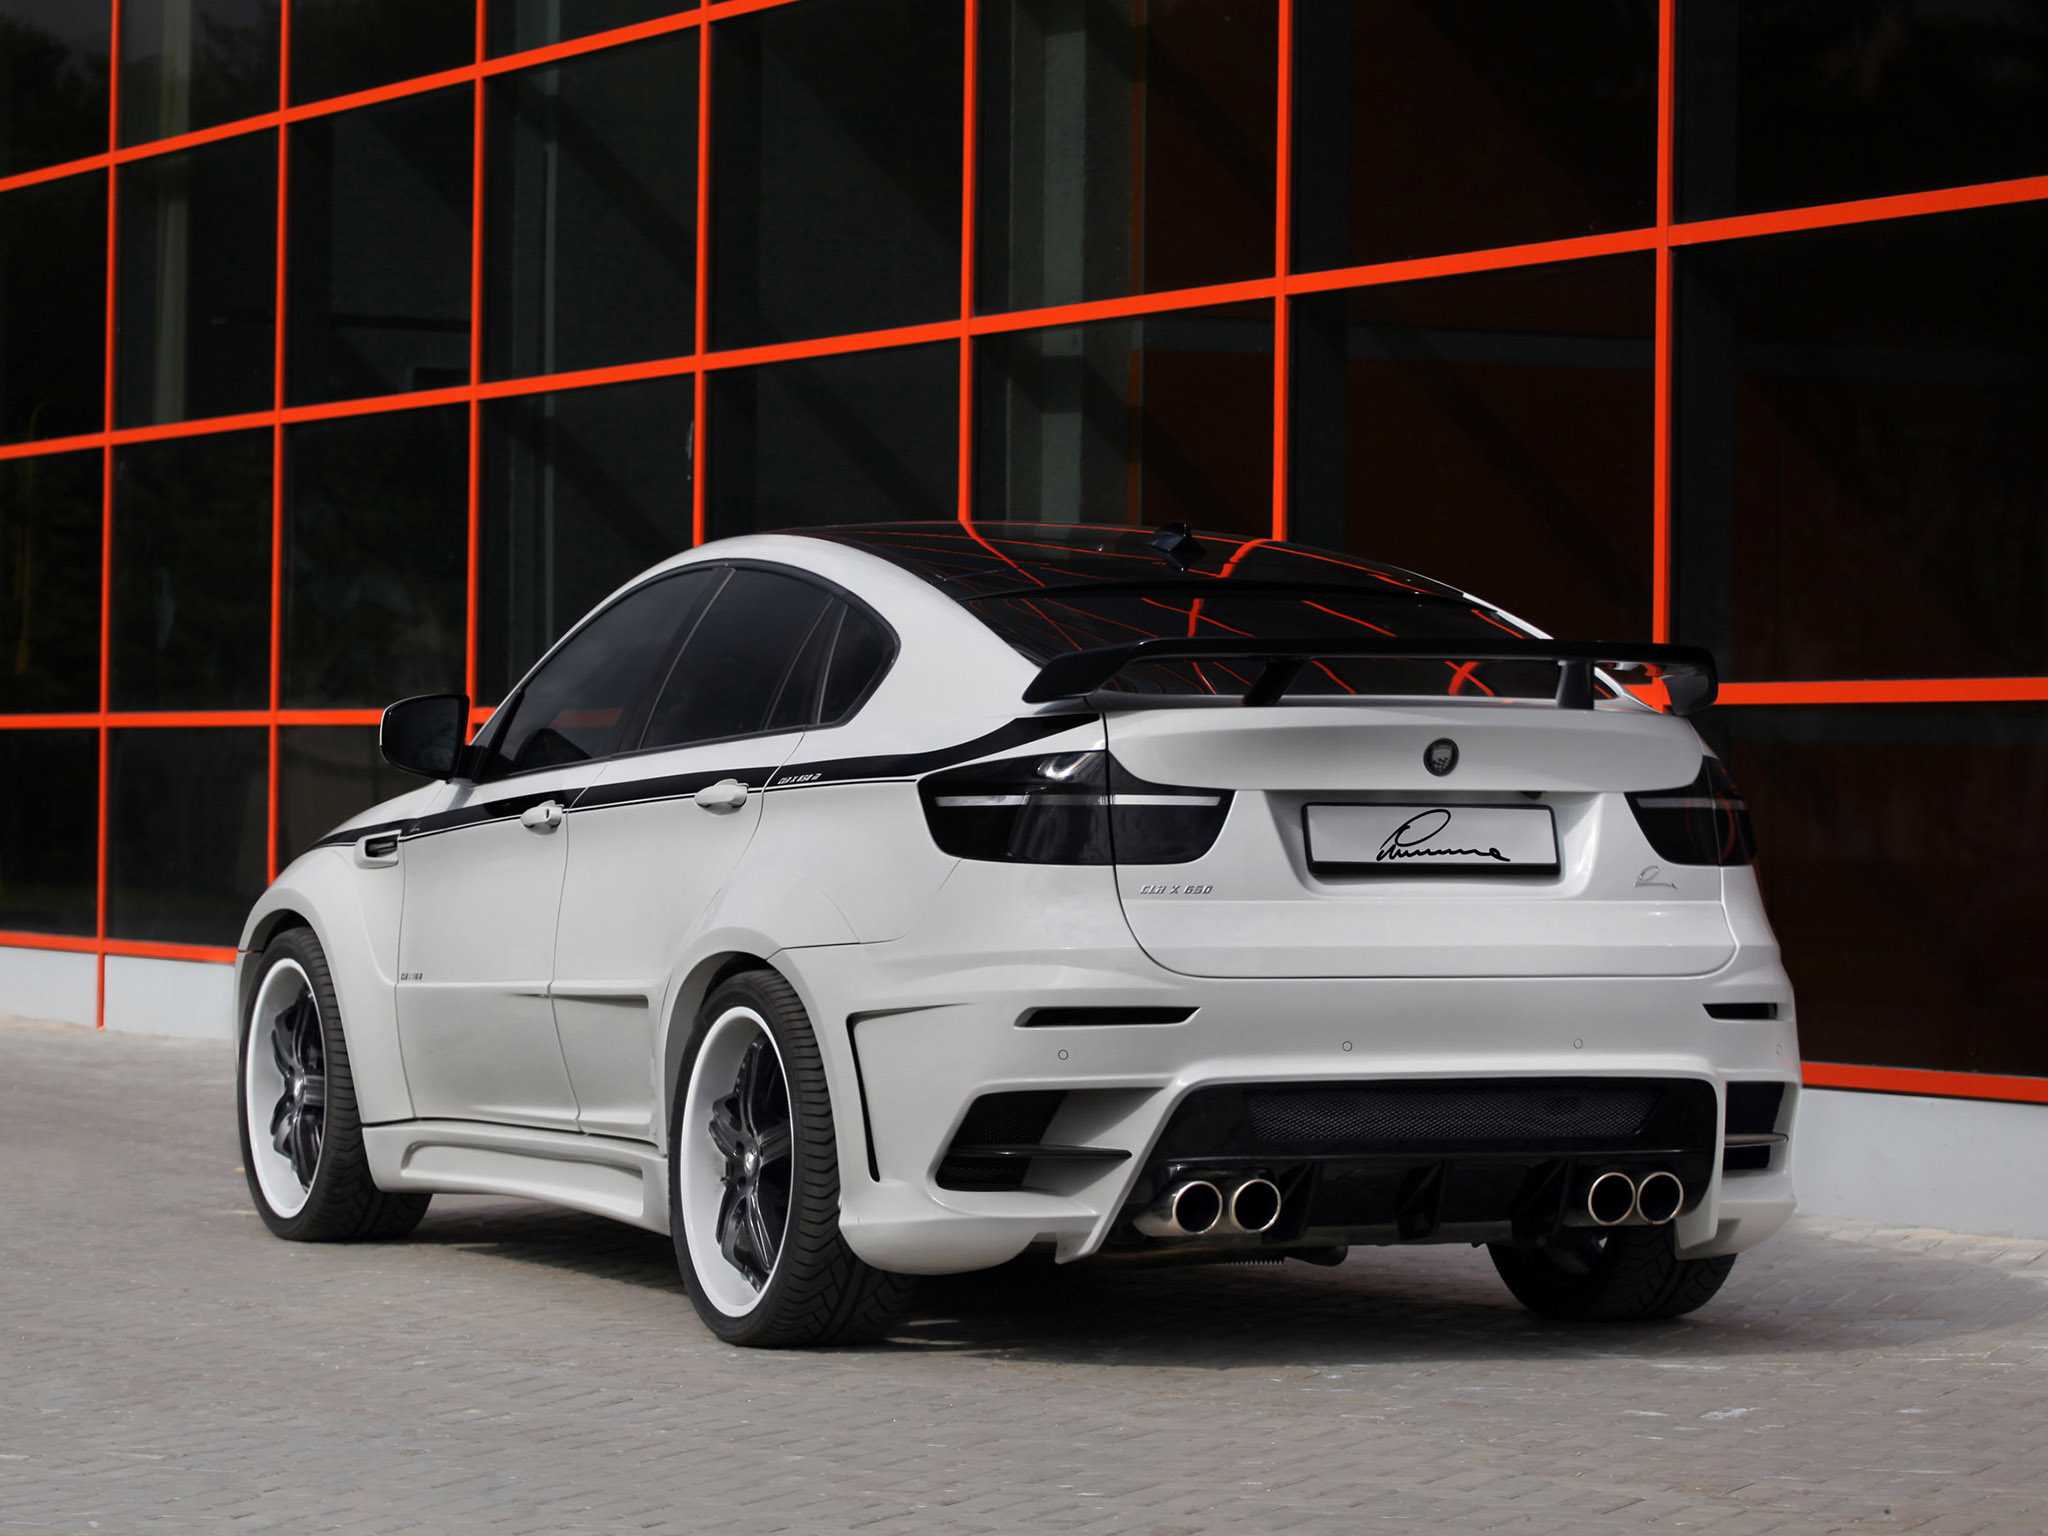 Ателье VOS Performance представило свой вариант заряженного купе BMW M2 Модификация от немецких тюнеров получила более агрессивный дизайн экстерьера, а